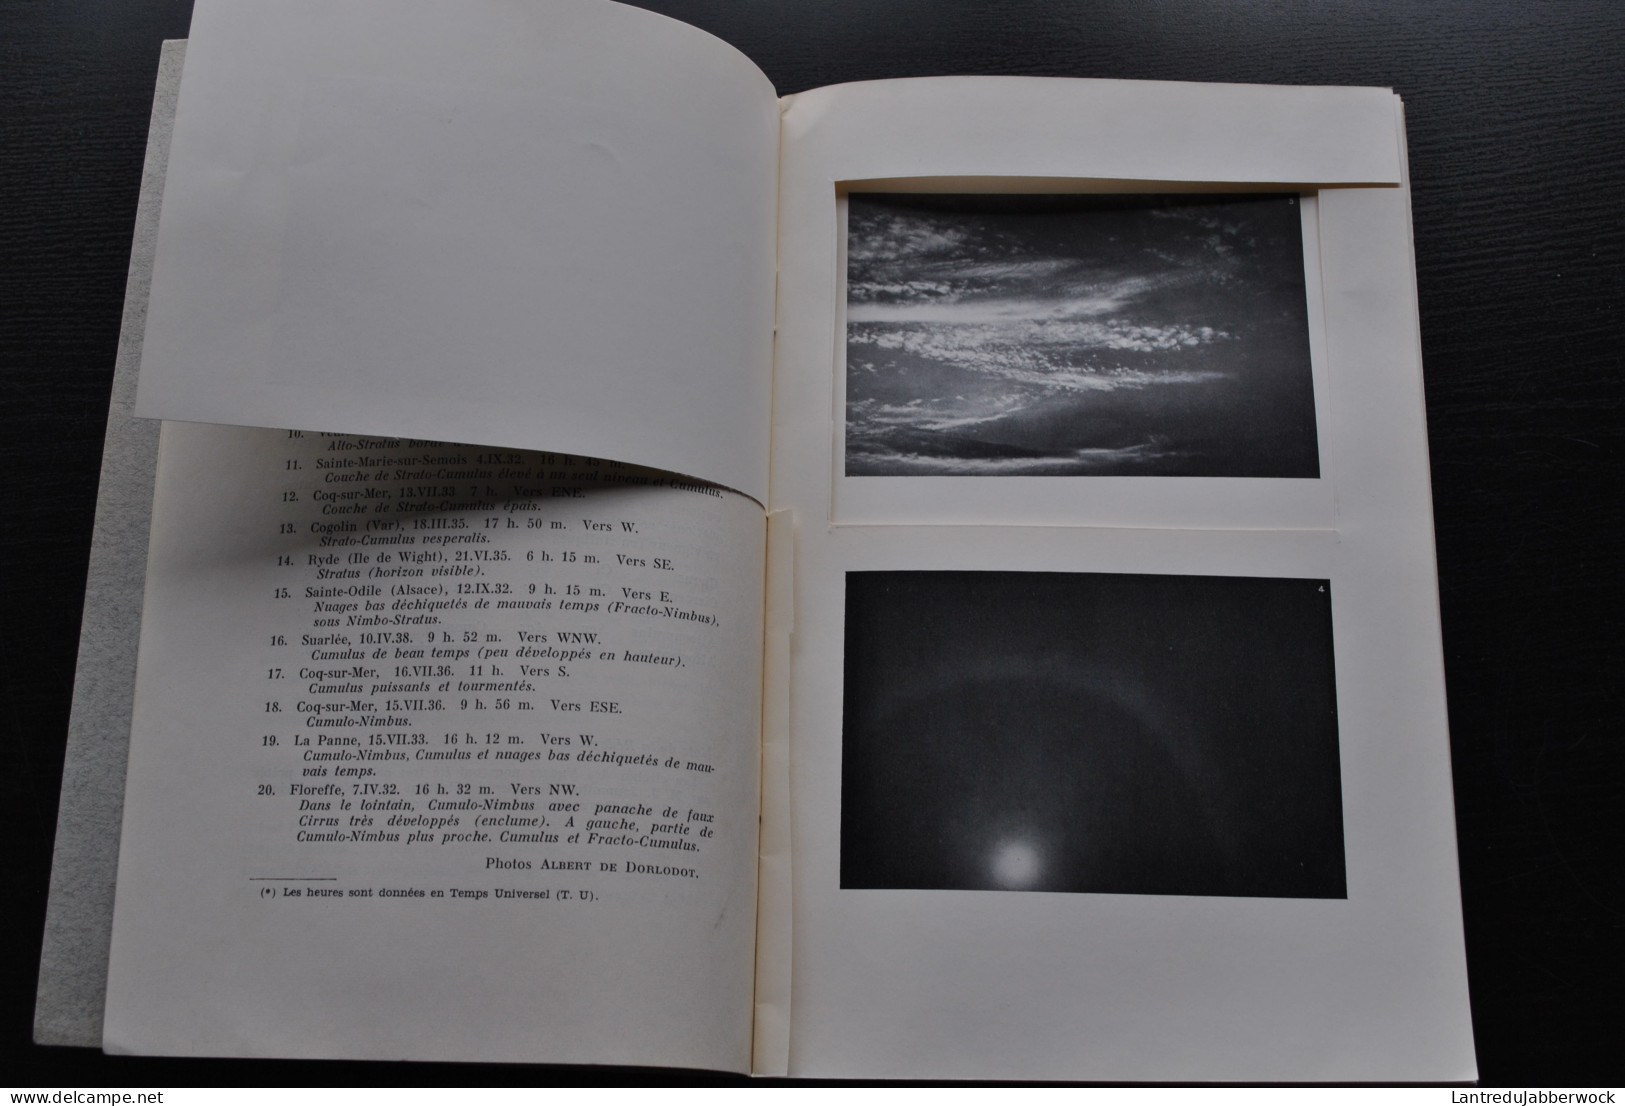 Atlas Des Nuages Extrait Du Bulletin Ciel Et Terre N°4 Avril 1940 ATTENTION INCOMPLET Astronomie RARE Dorlodot Albert - Astronomie